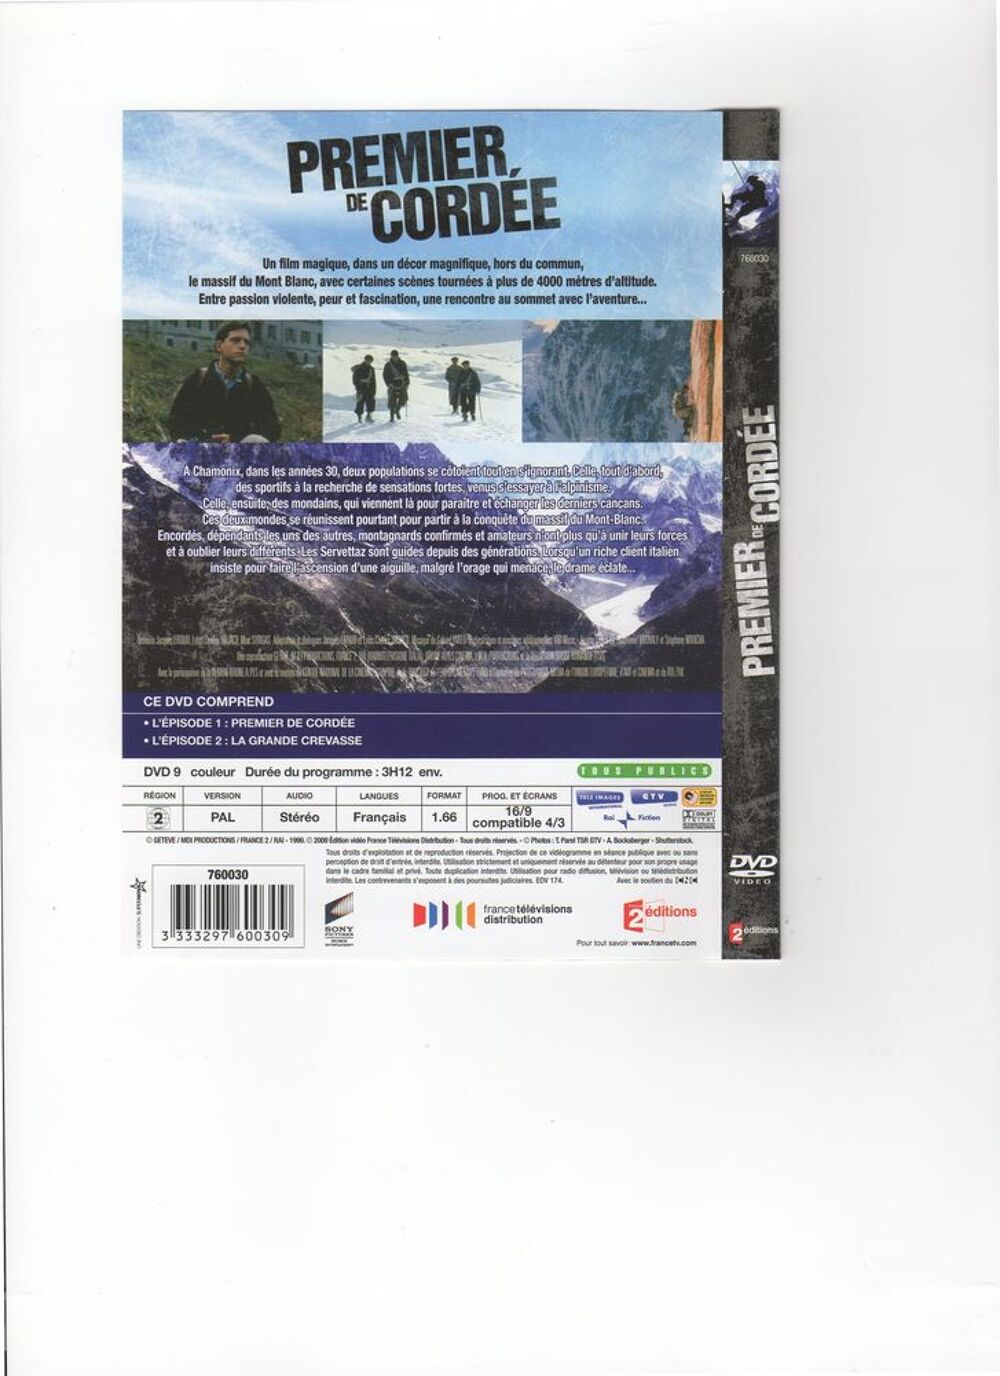 DVD VIDEO : PREMIER DE CORDEE DVD et blu-ray